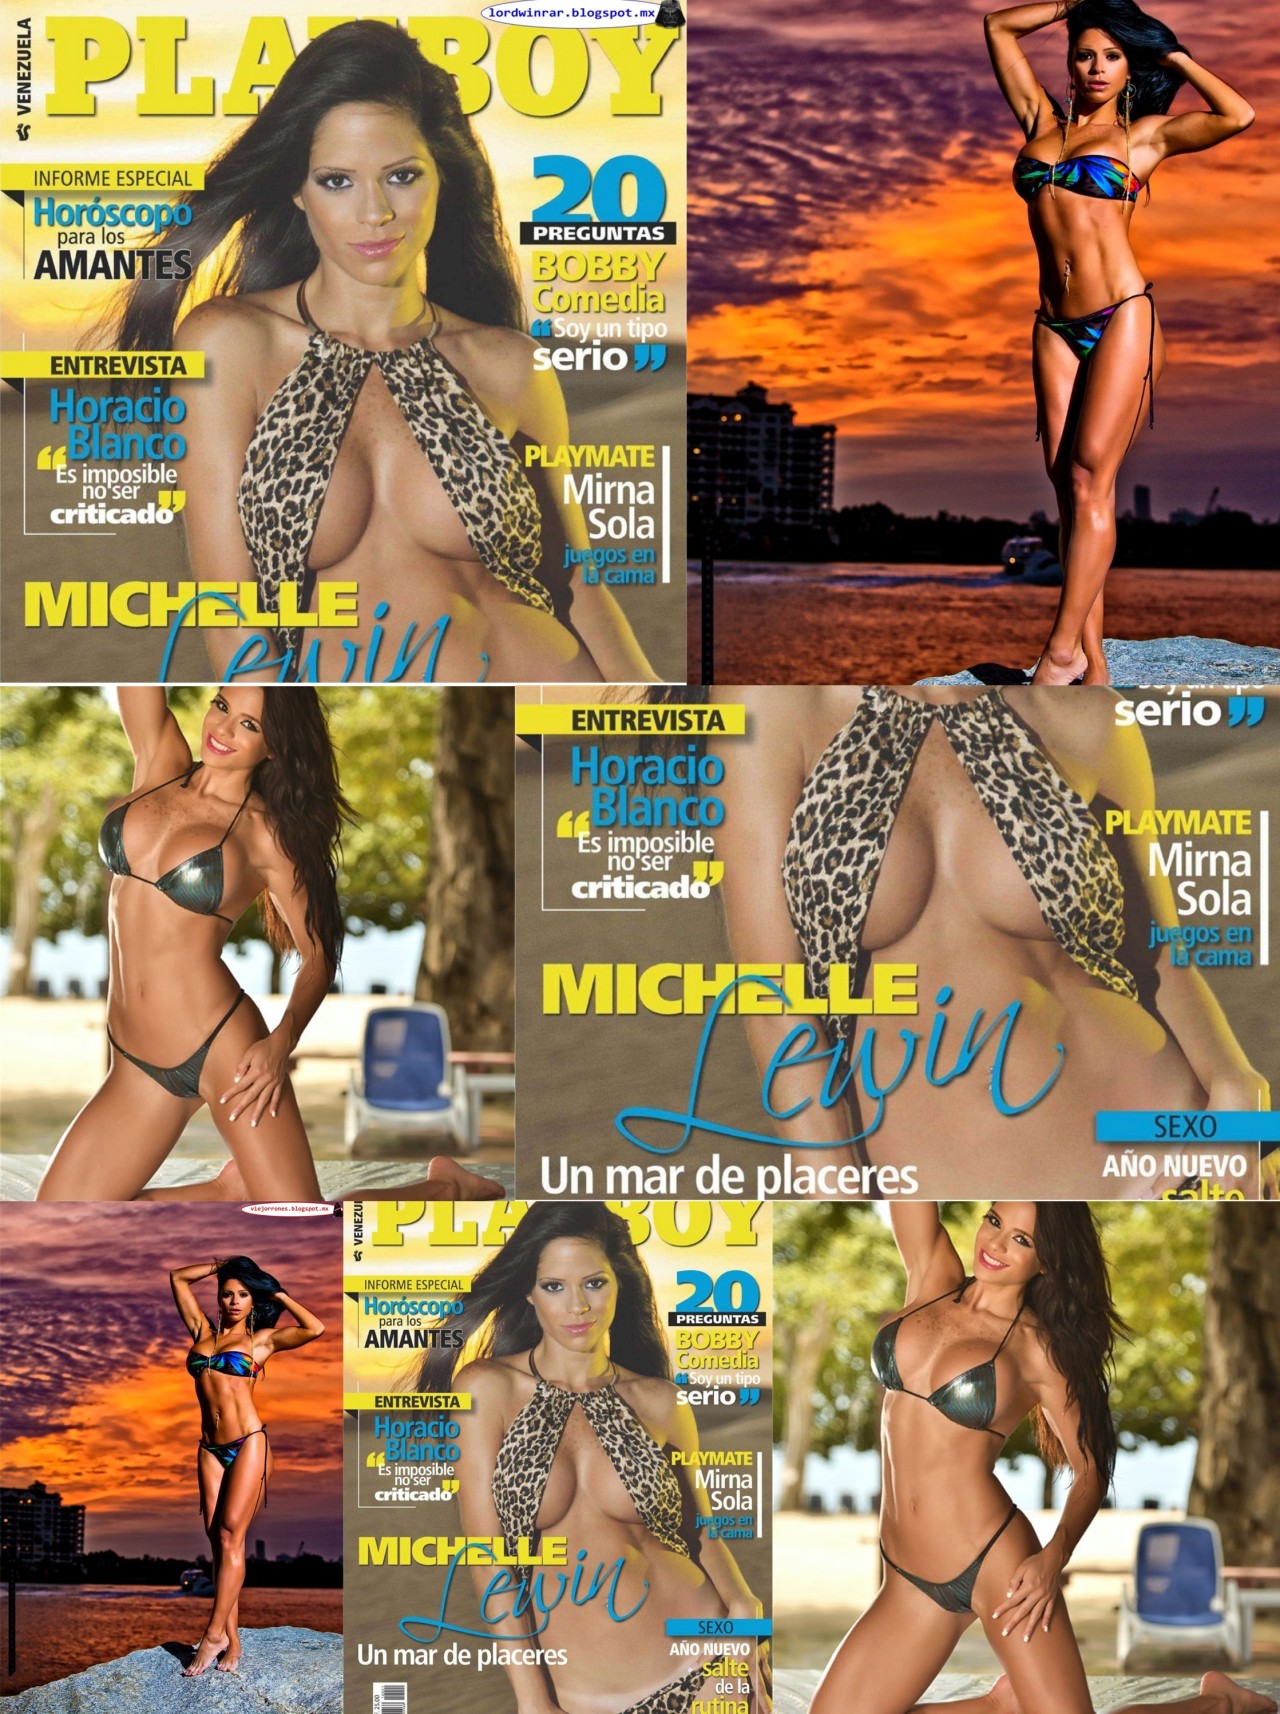 Michelle Lewin - Playboy Mexico Cyber, Venezuela y Galeria (227 Fotos HQ)Michelle